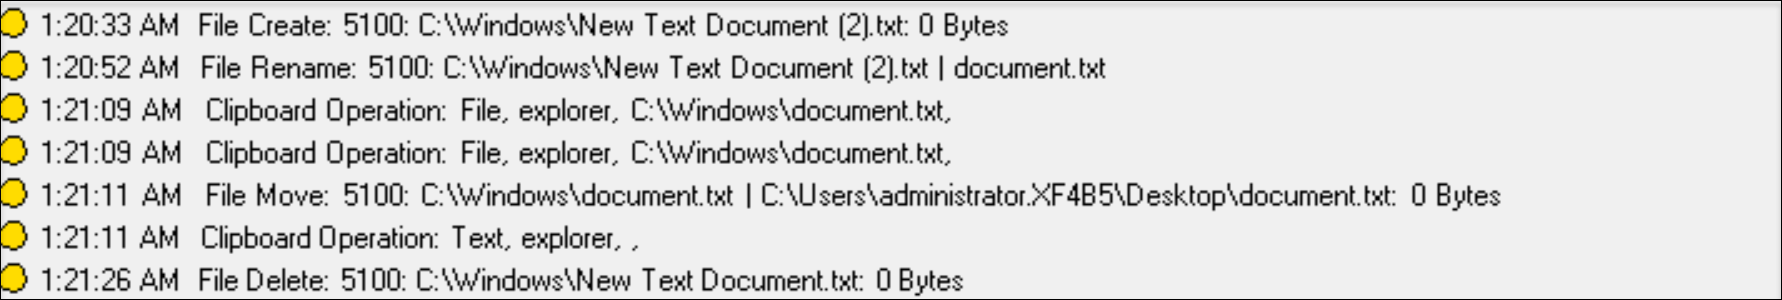 Opérations de fichiers